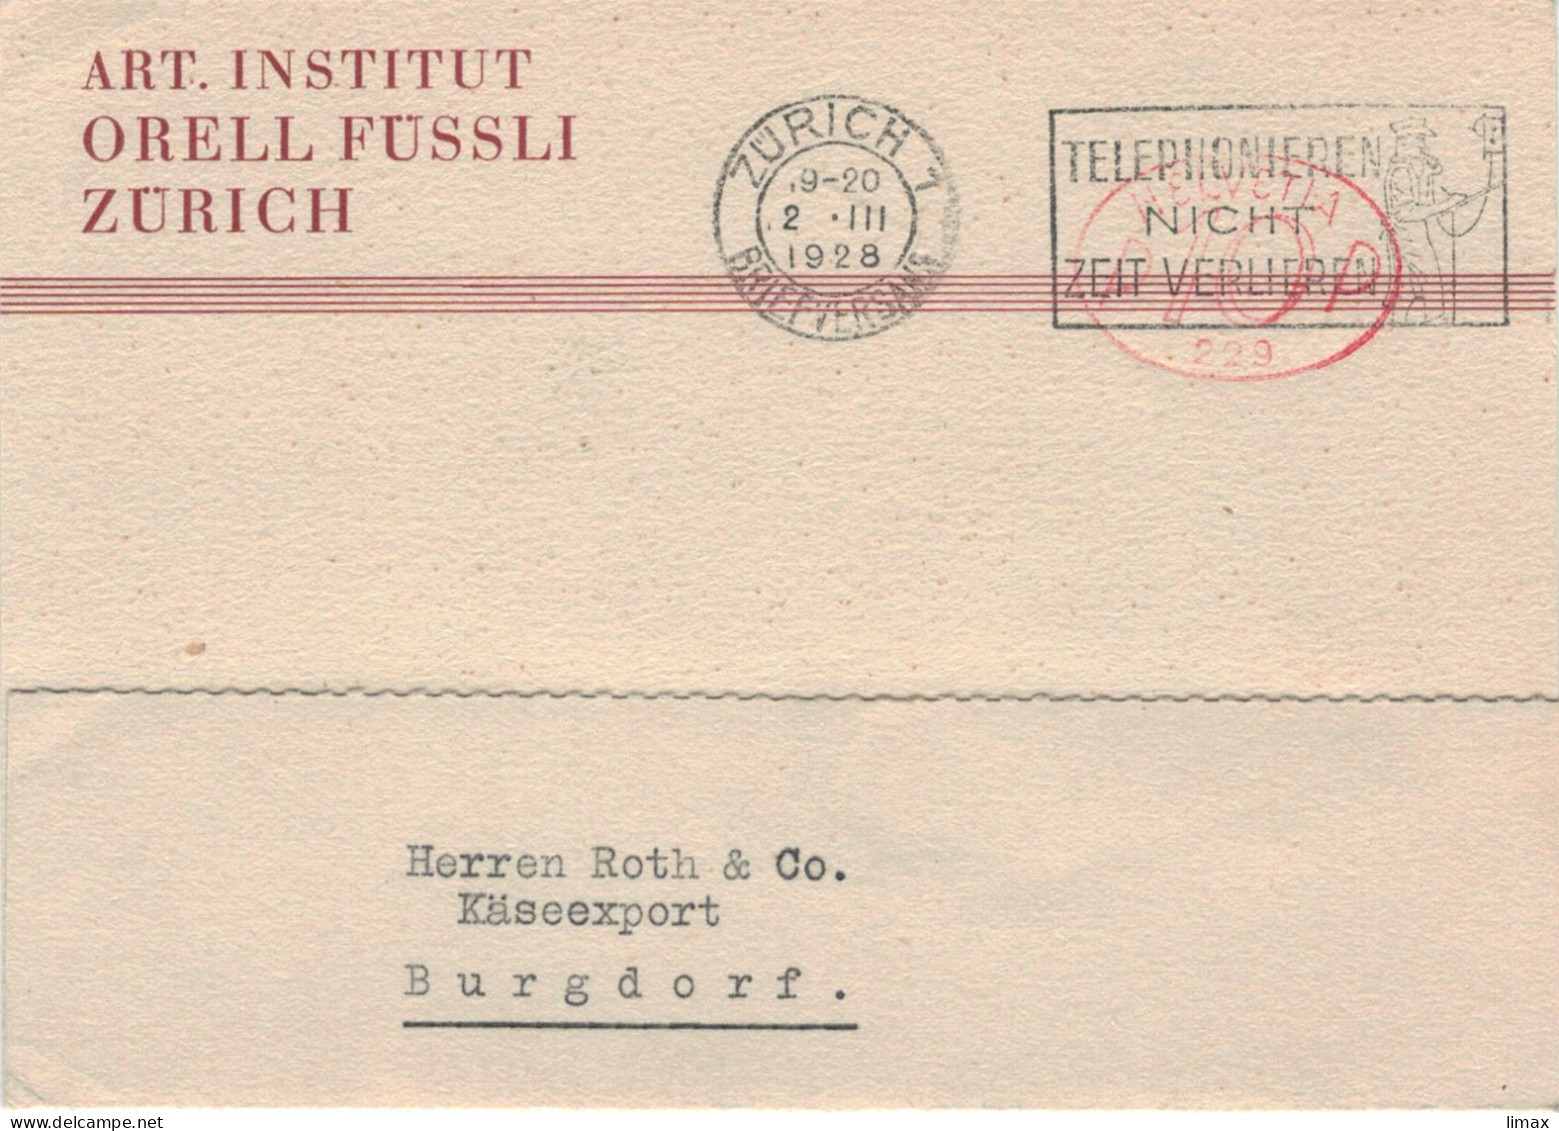 Art. Institut Orell Füssli Zürich Briefversand 1928 Hasler-Stempel No 229 - Telefonieren Nicht Zeit Verlieren > Burgdorf - Affrancature Meccaniche